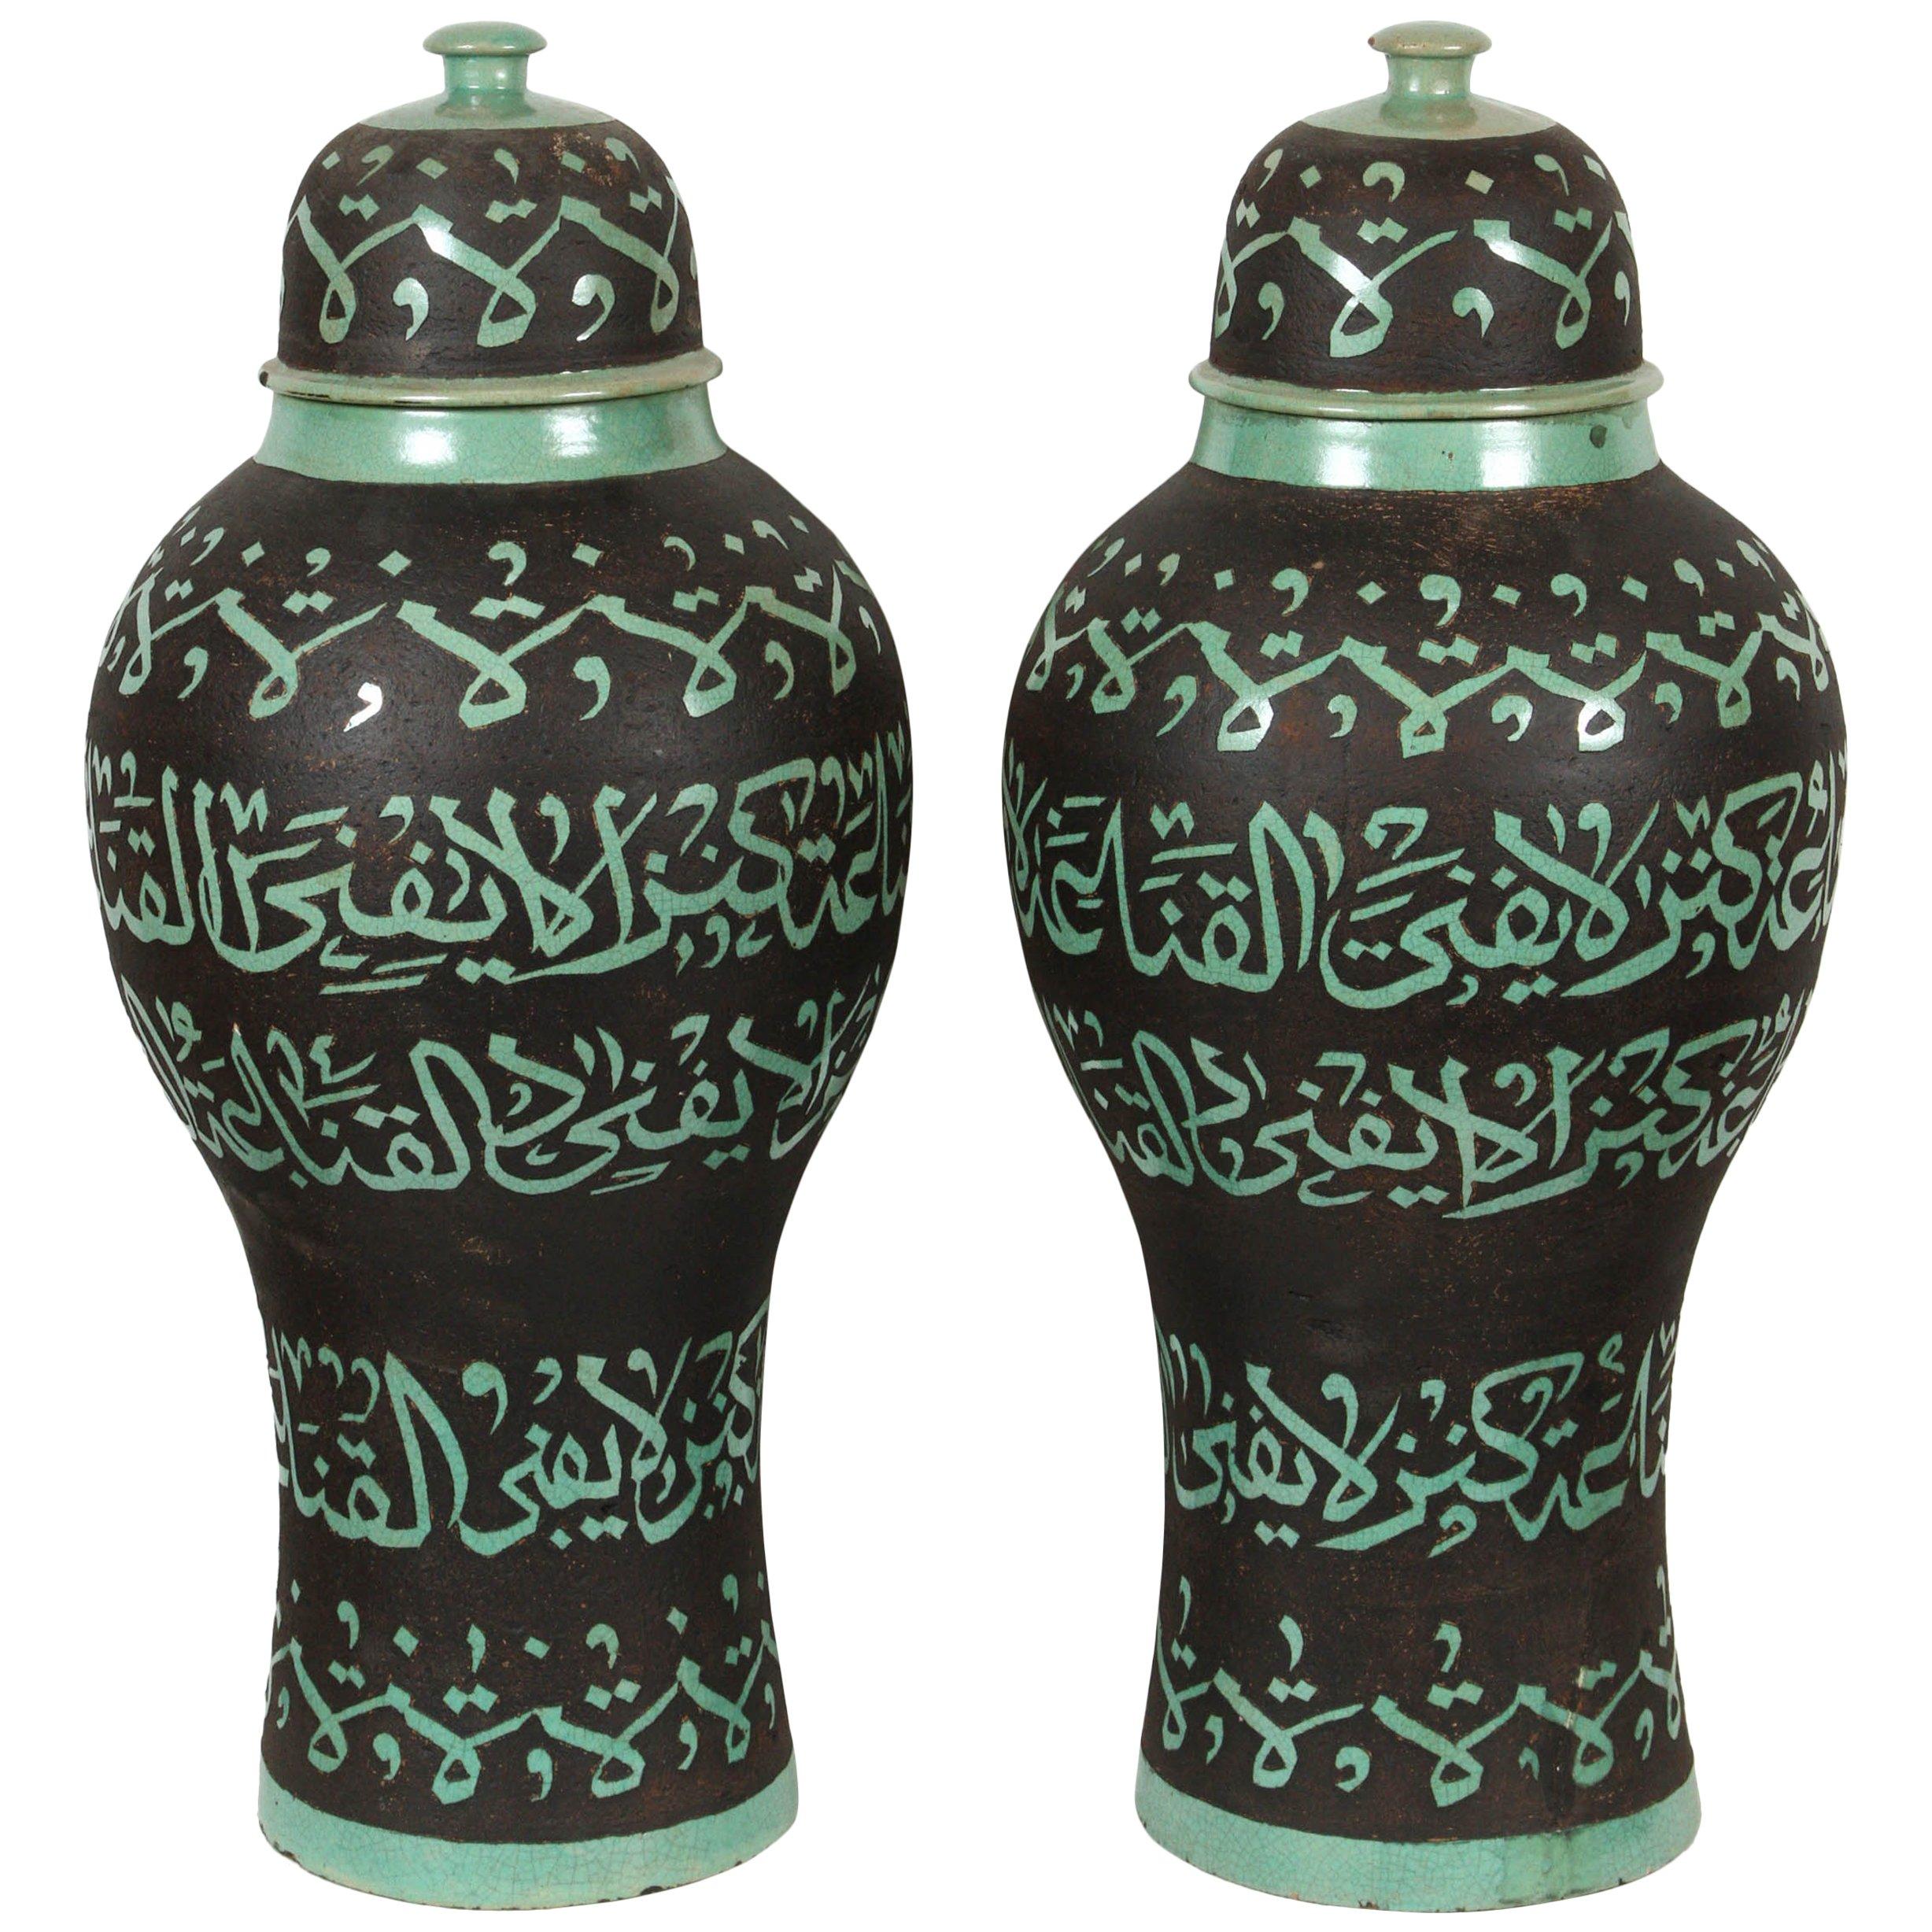 Marokkanische grüne Keramik-Urnen mit arabischer Kalligrafie, Lettrism-Kunstschrift